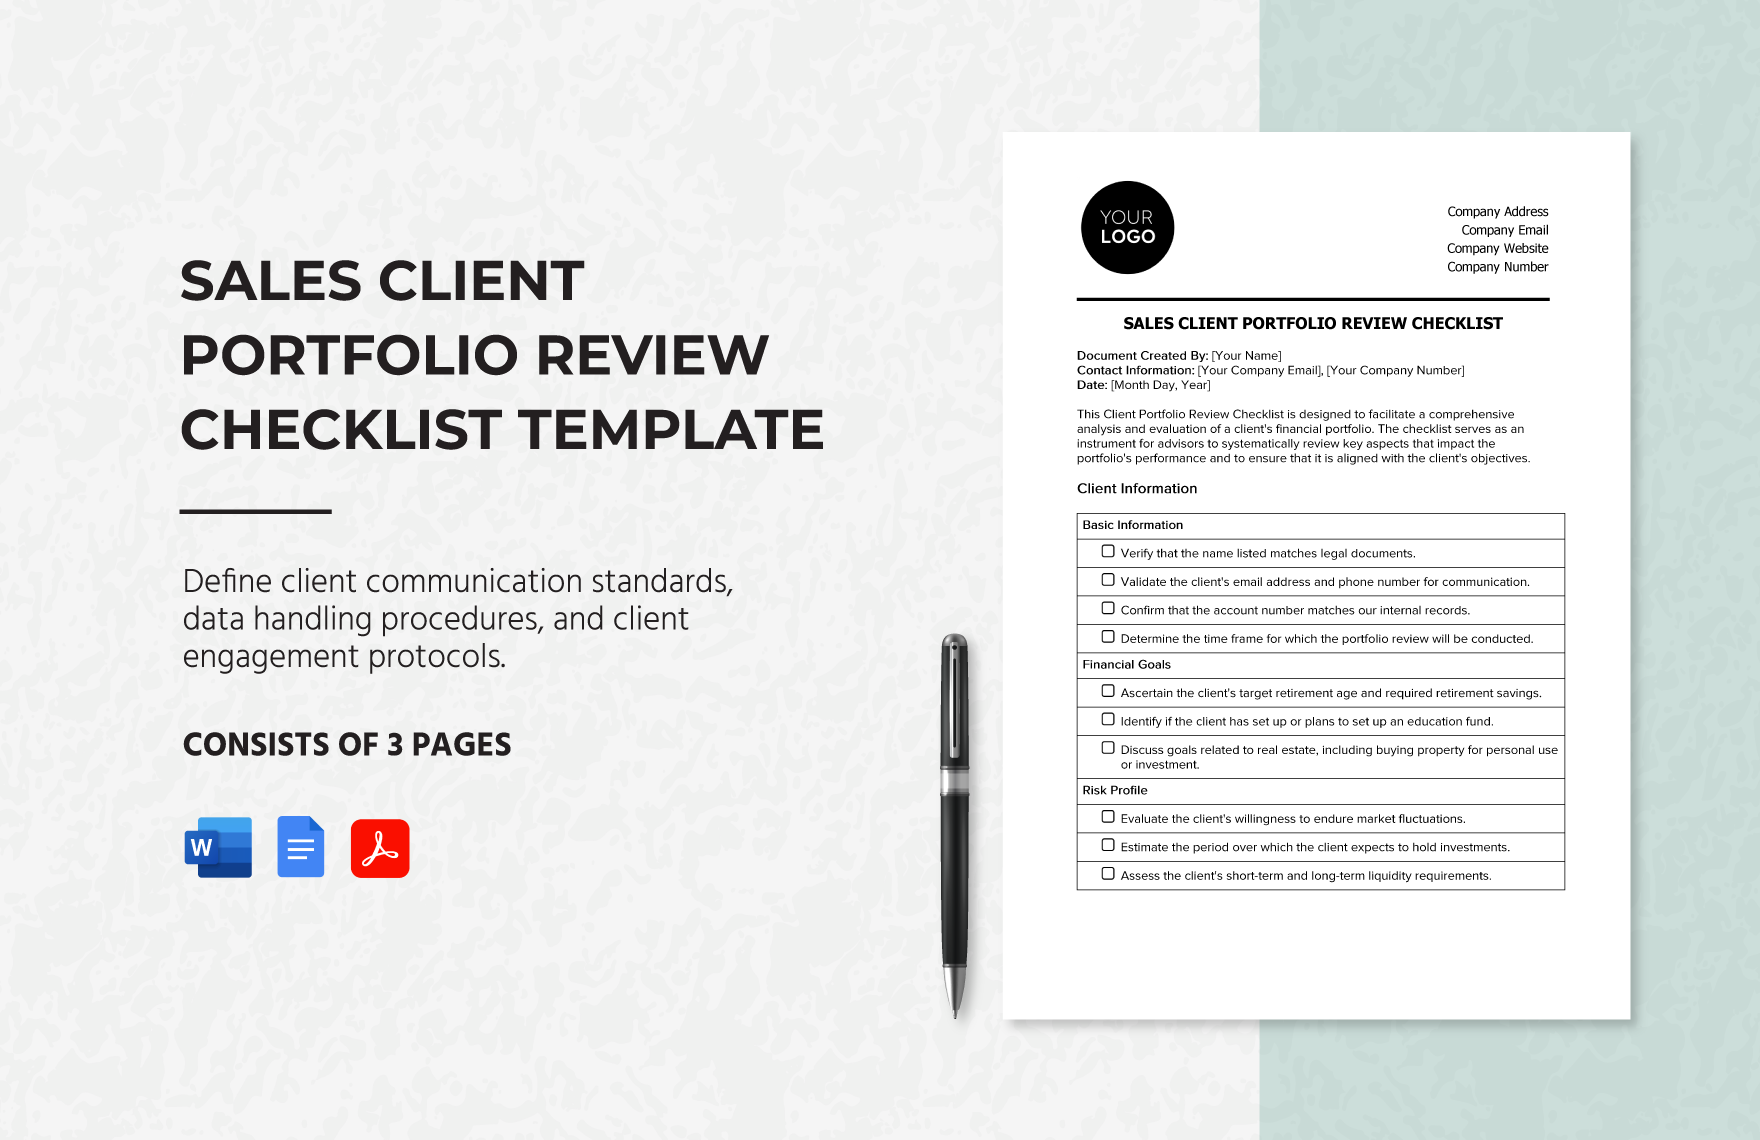 Sales Client Portfolio Review Checklist Template